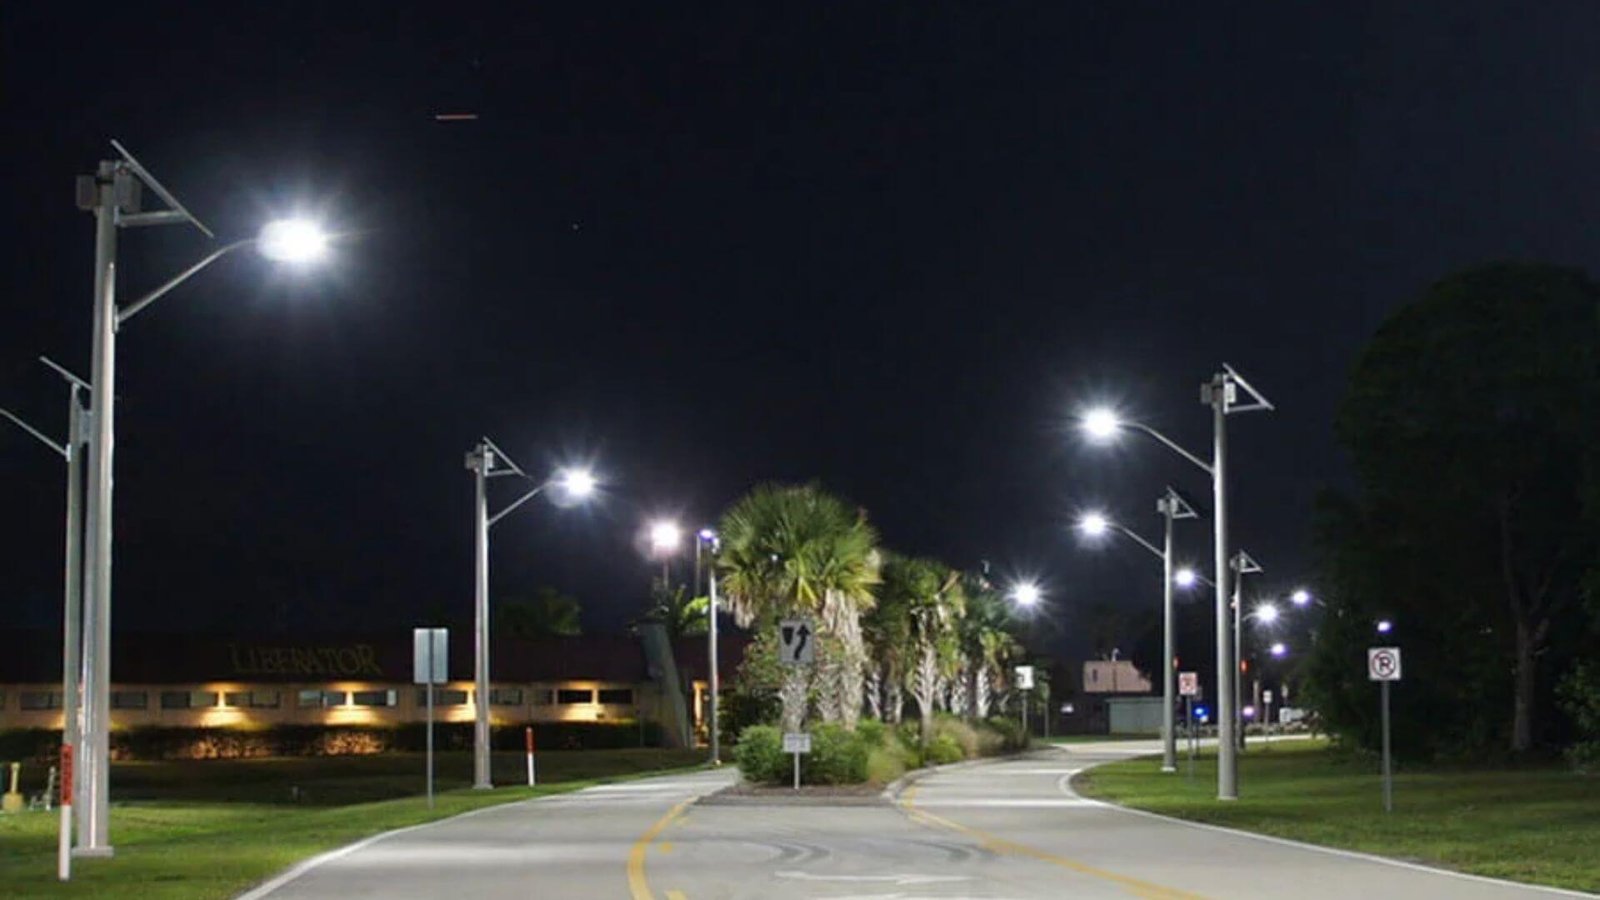 Implementation of Solar Street Light